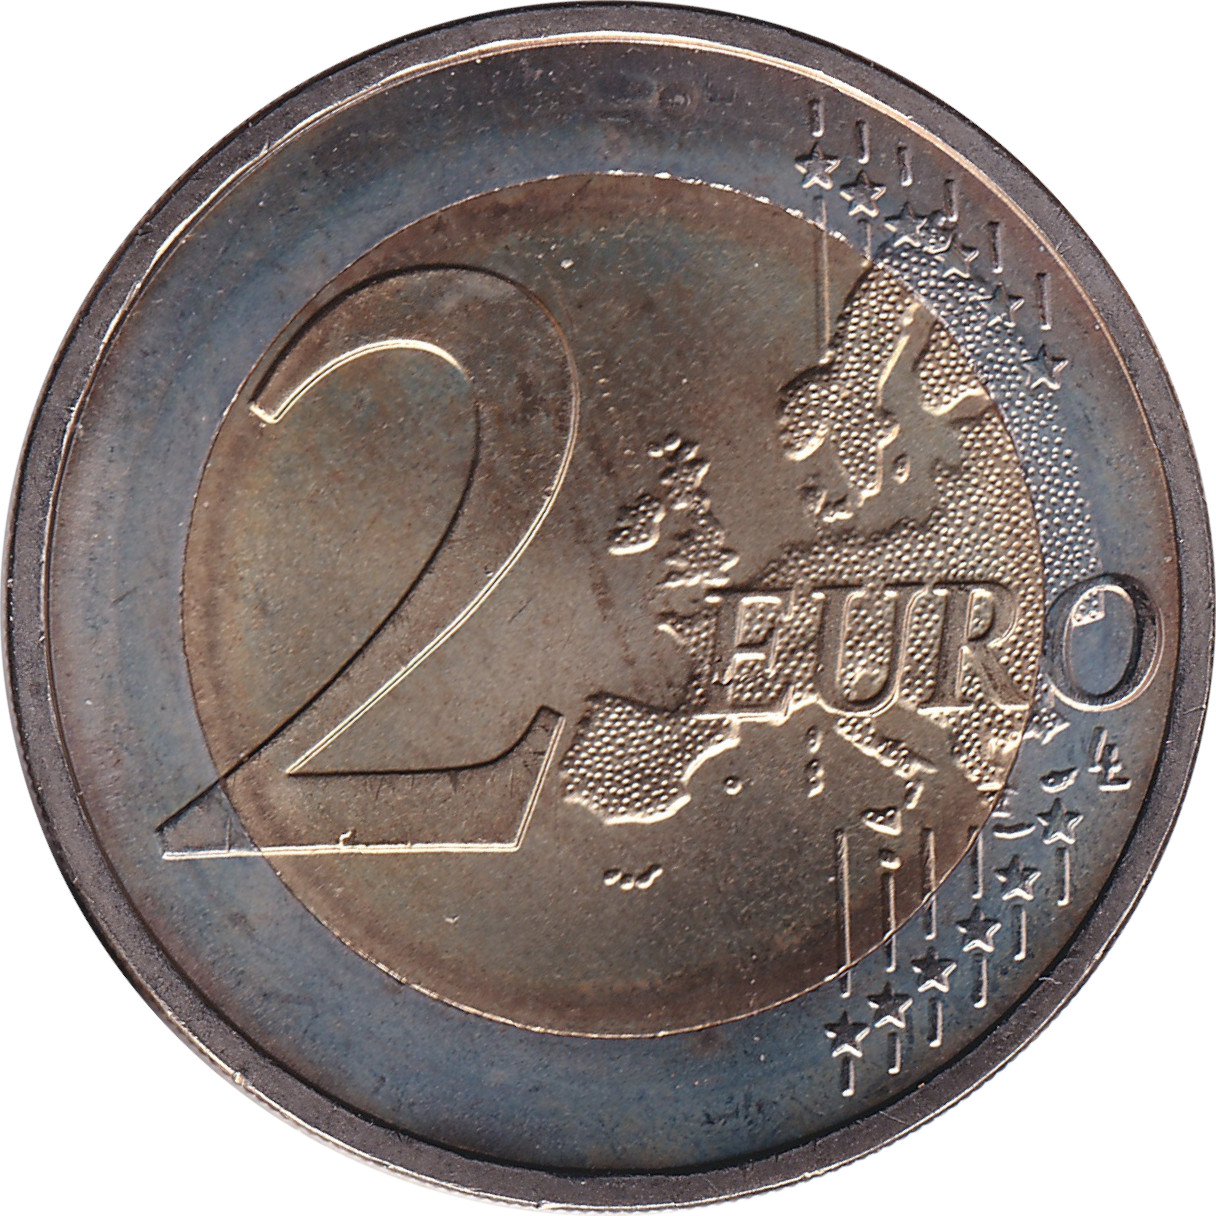 2 euro - Mise en circulation de l'Euro - Allemagne